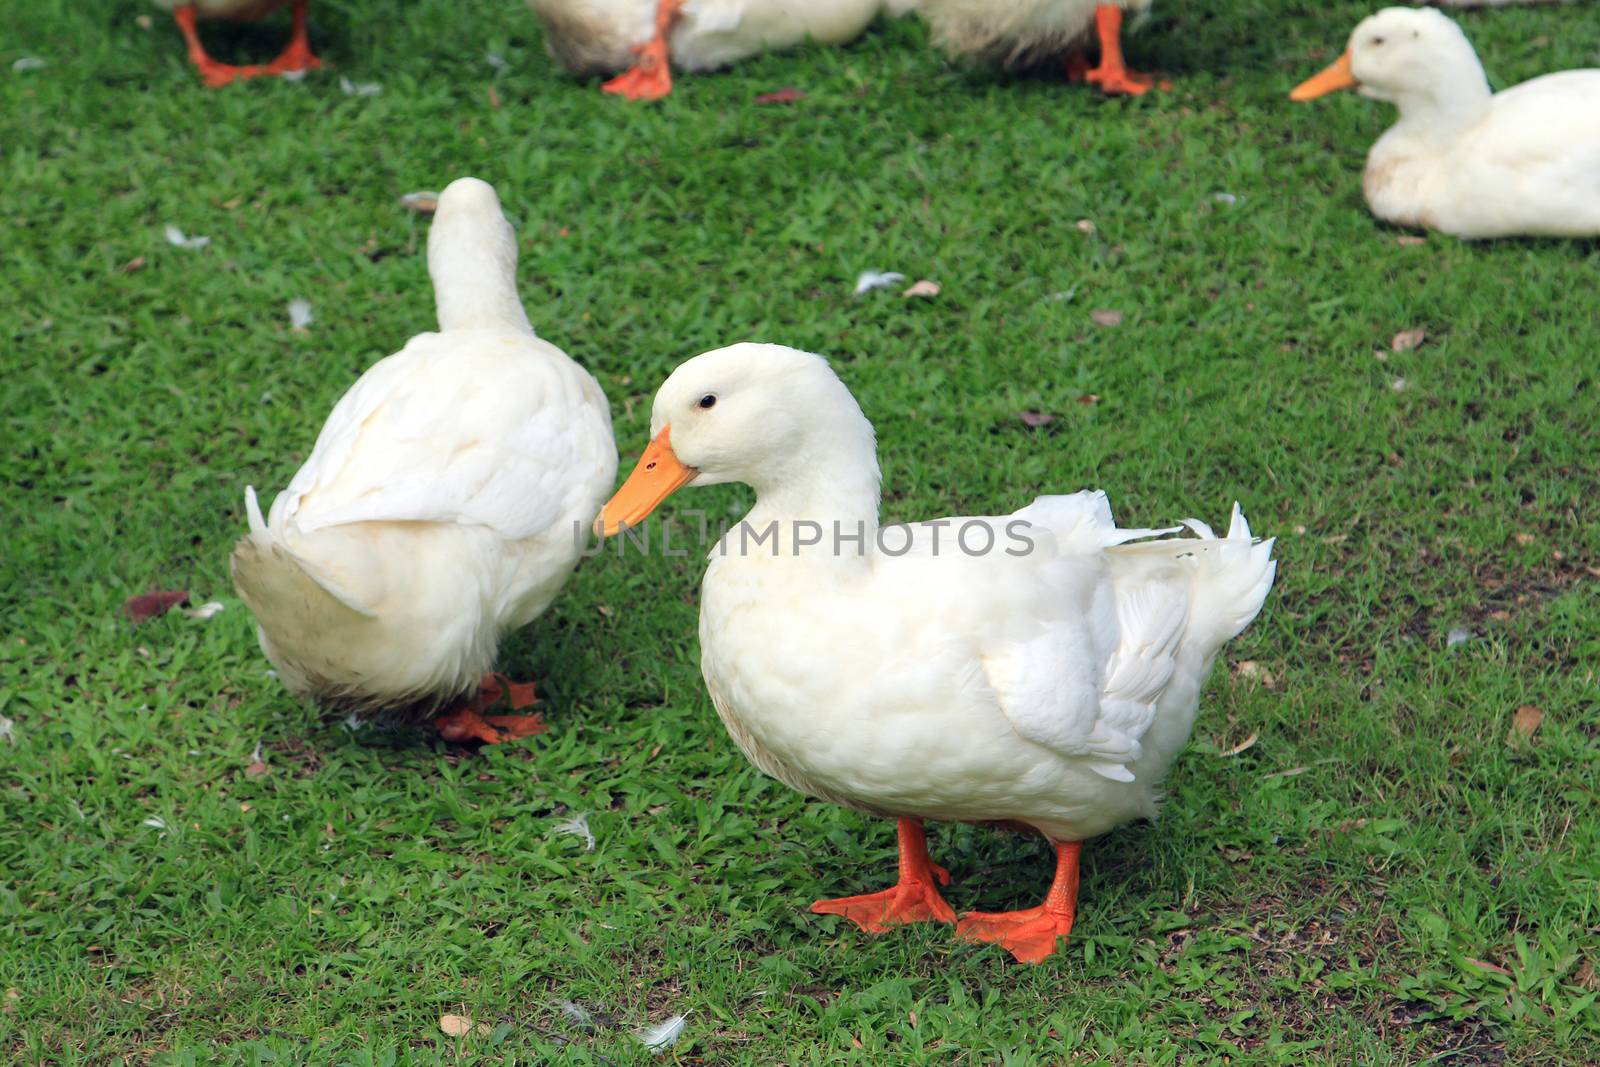 White ducks in grass